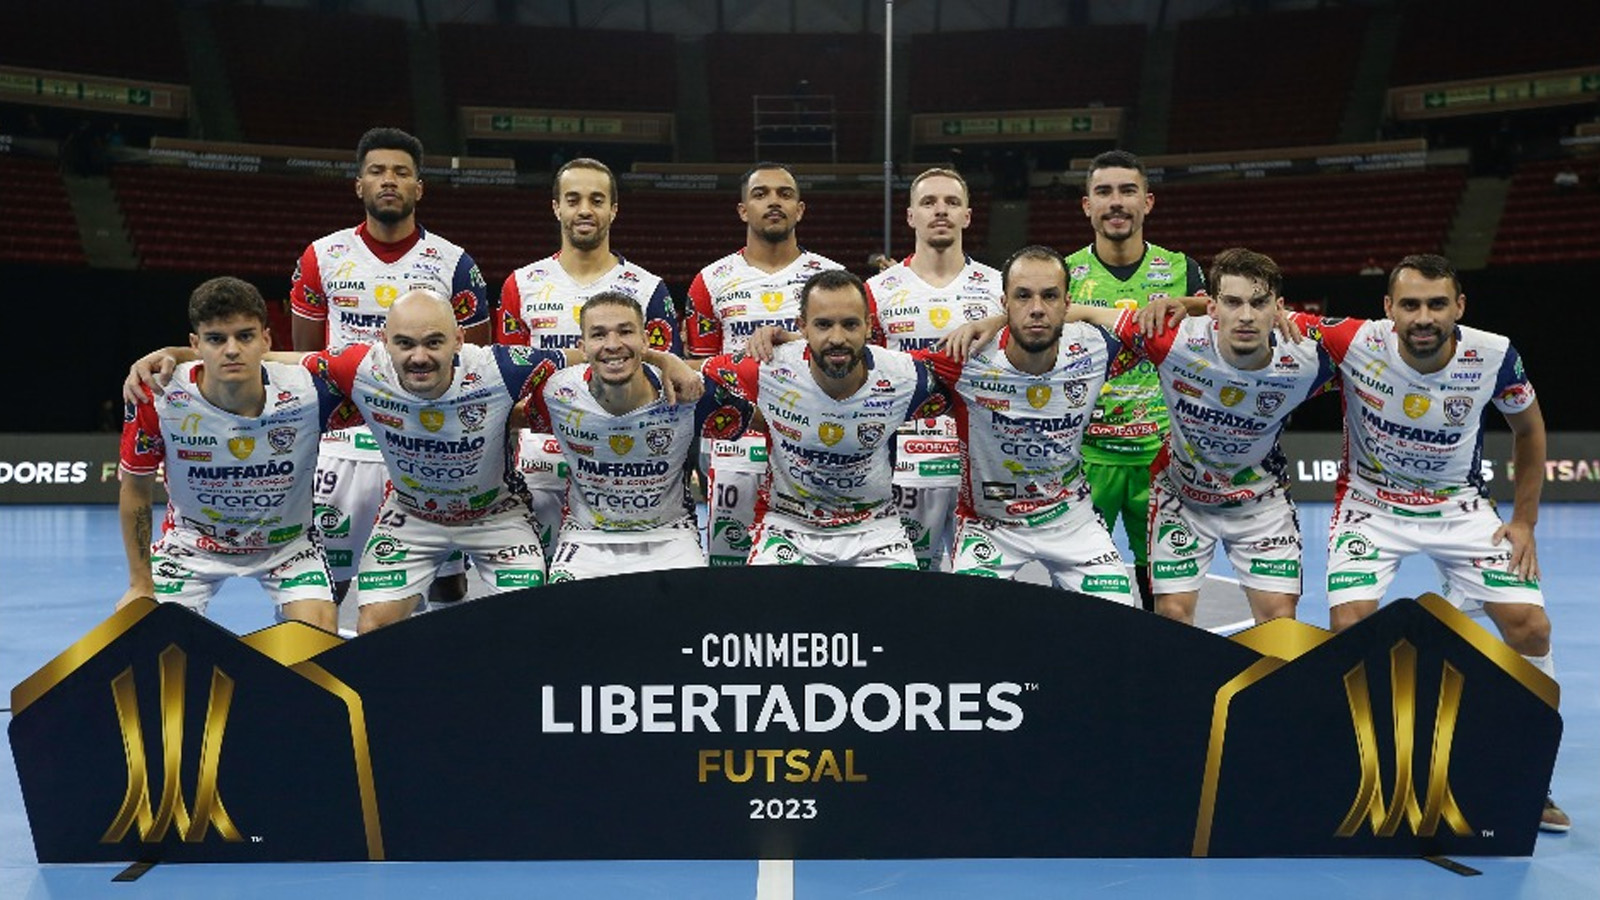 Nãometoquense Guilherme Micuim é campeão da Libertadores de Futsal